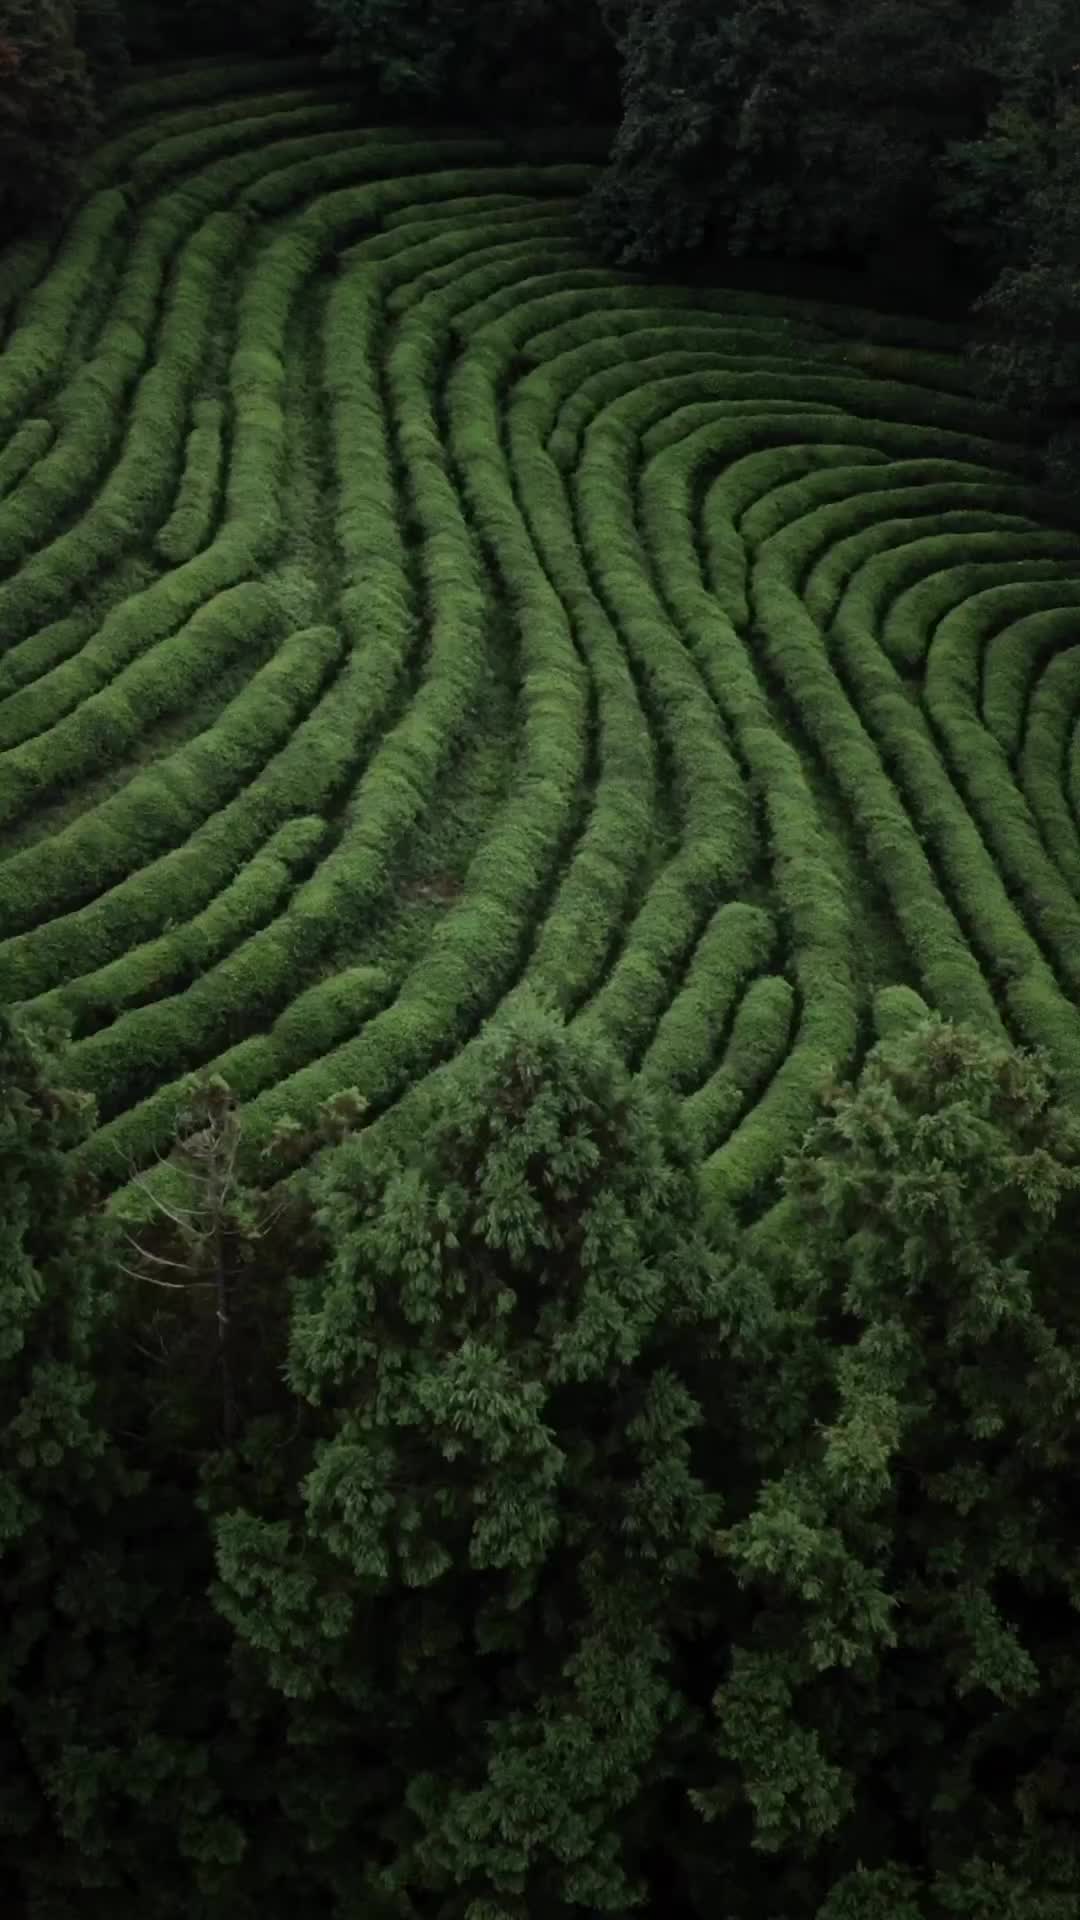 Lost in Green Tea Fields of Seongju-gun, South Korea